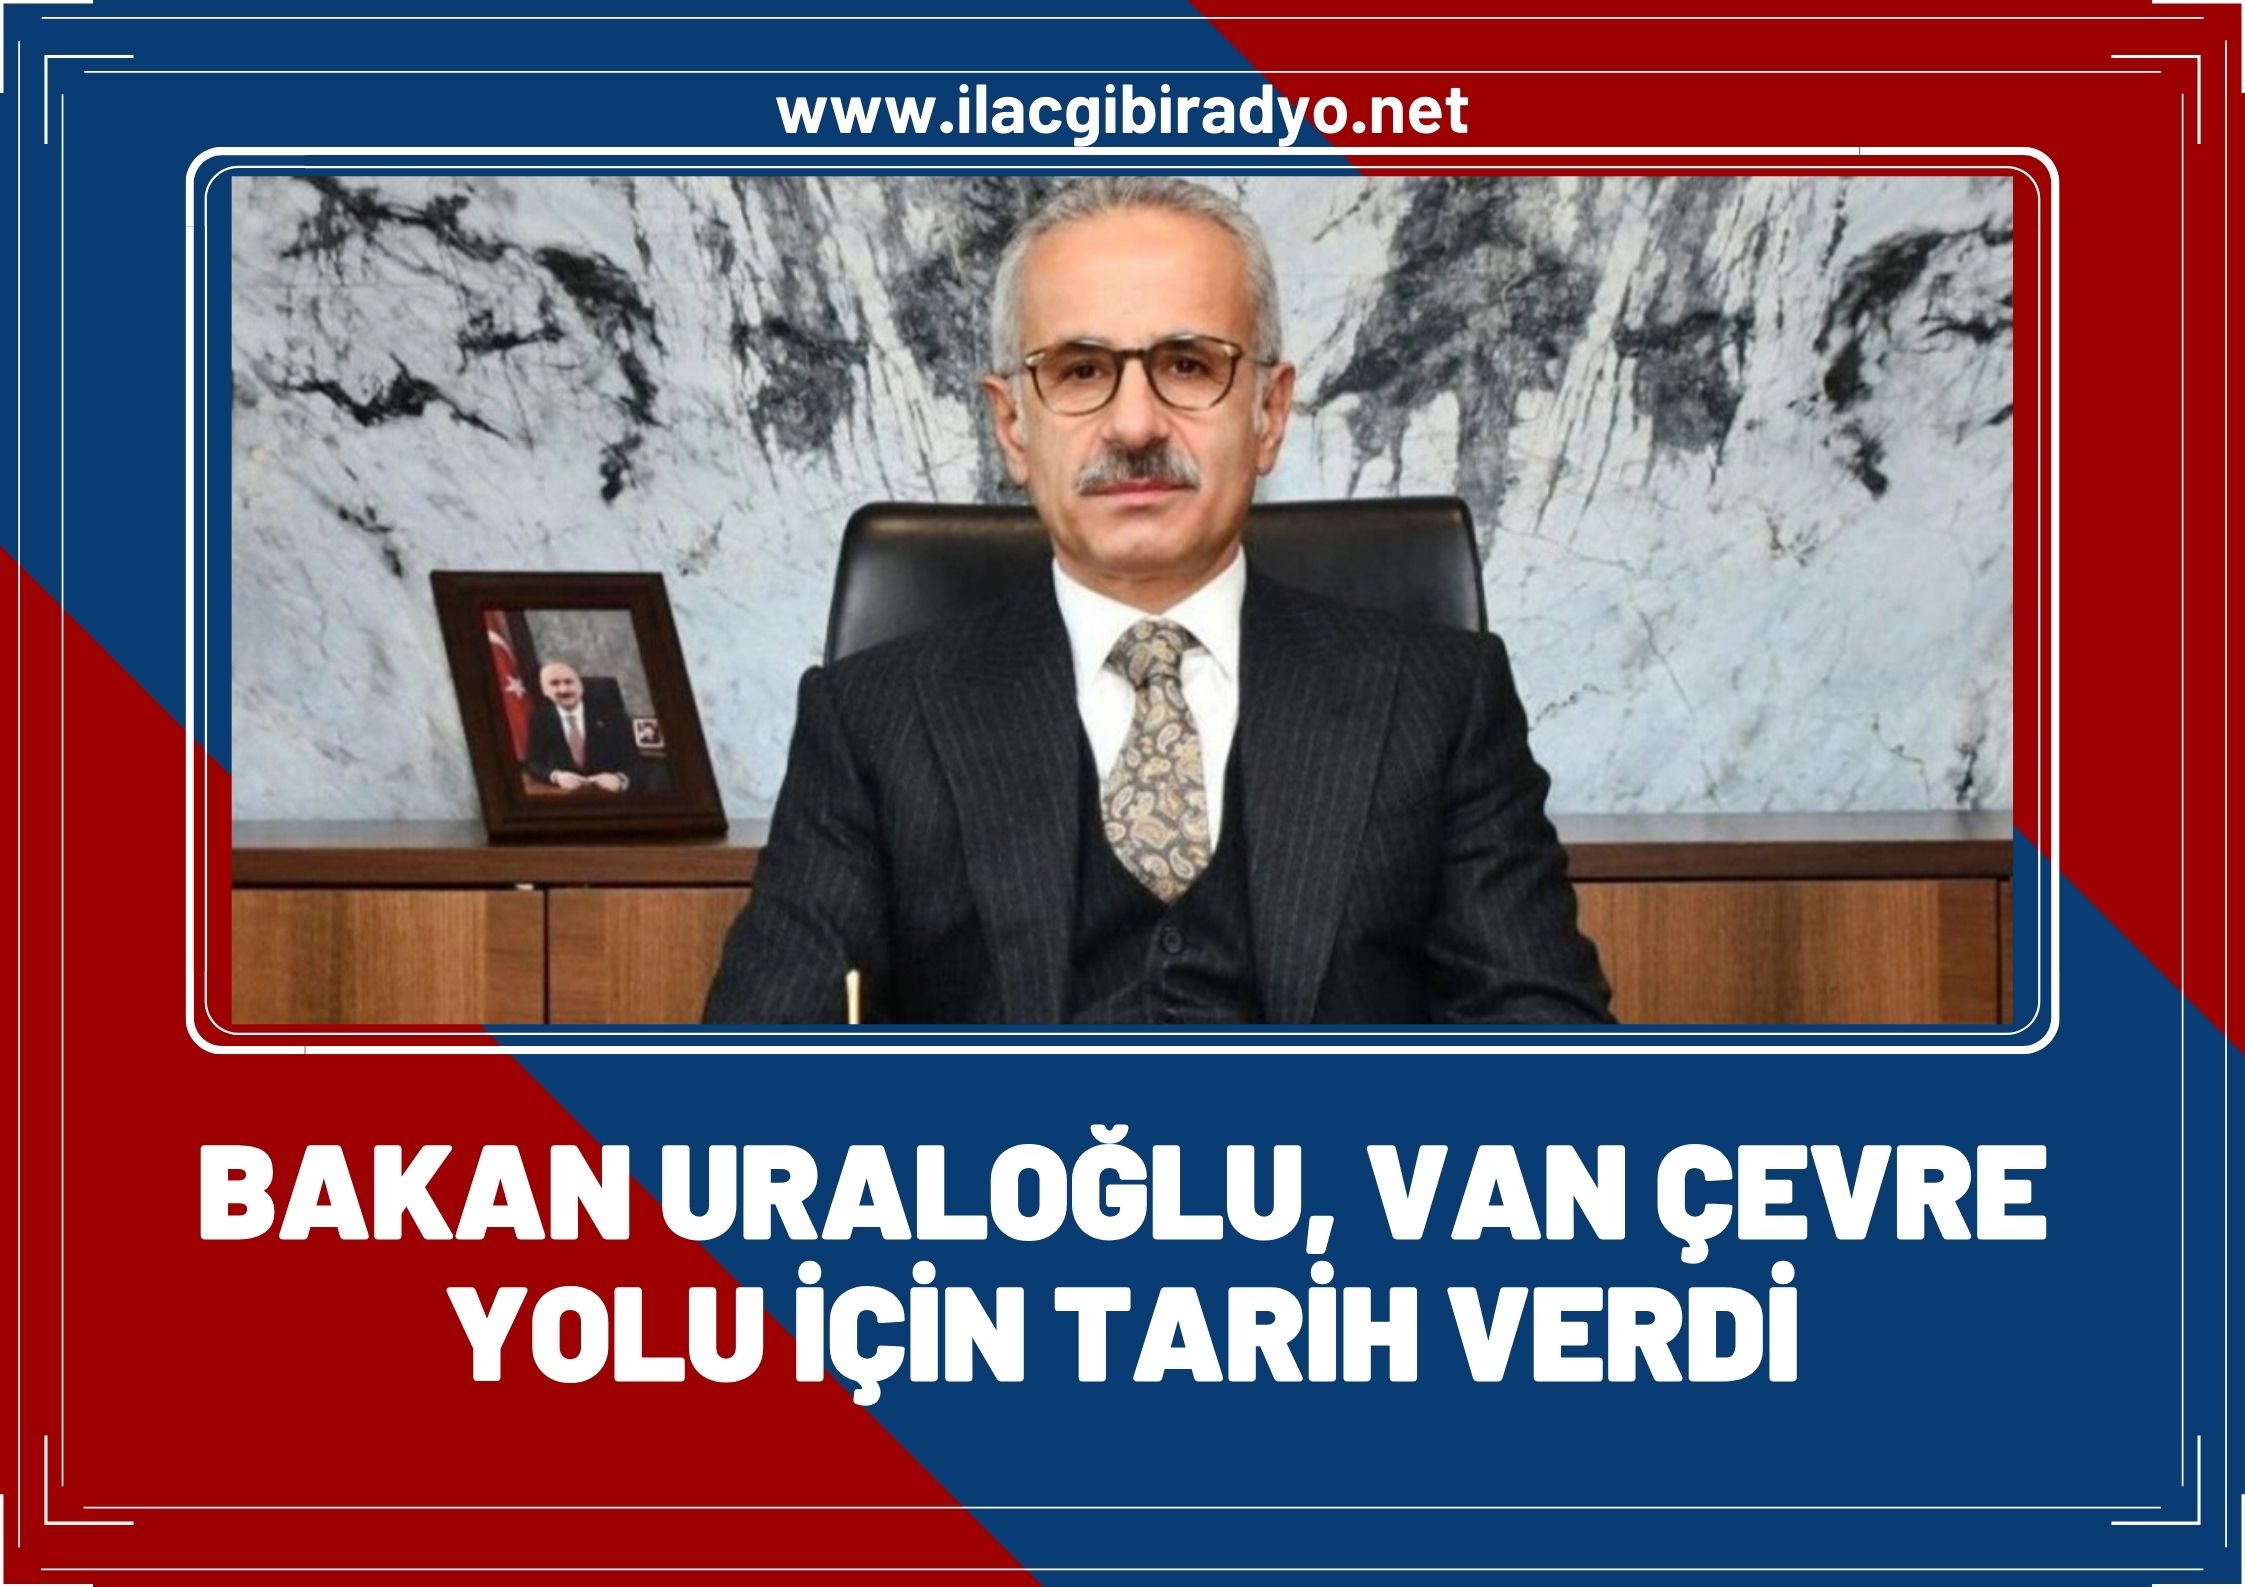 Bakan Uraloğlu, Van Çevre Yolu için o yılı işaret etti!